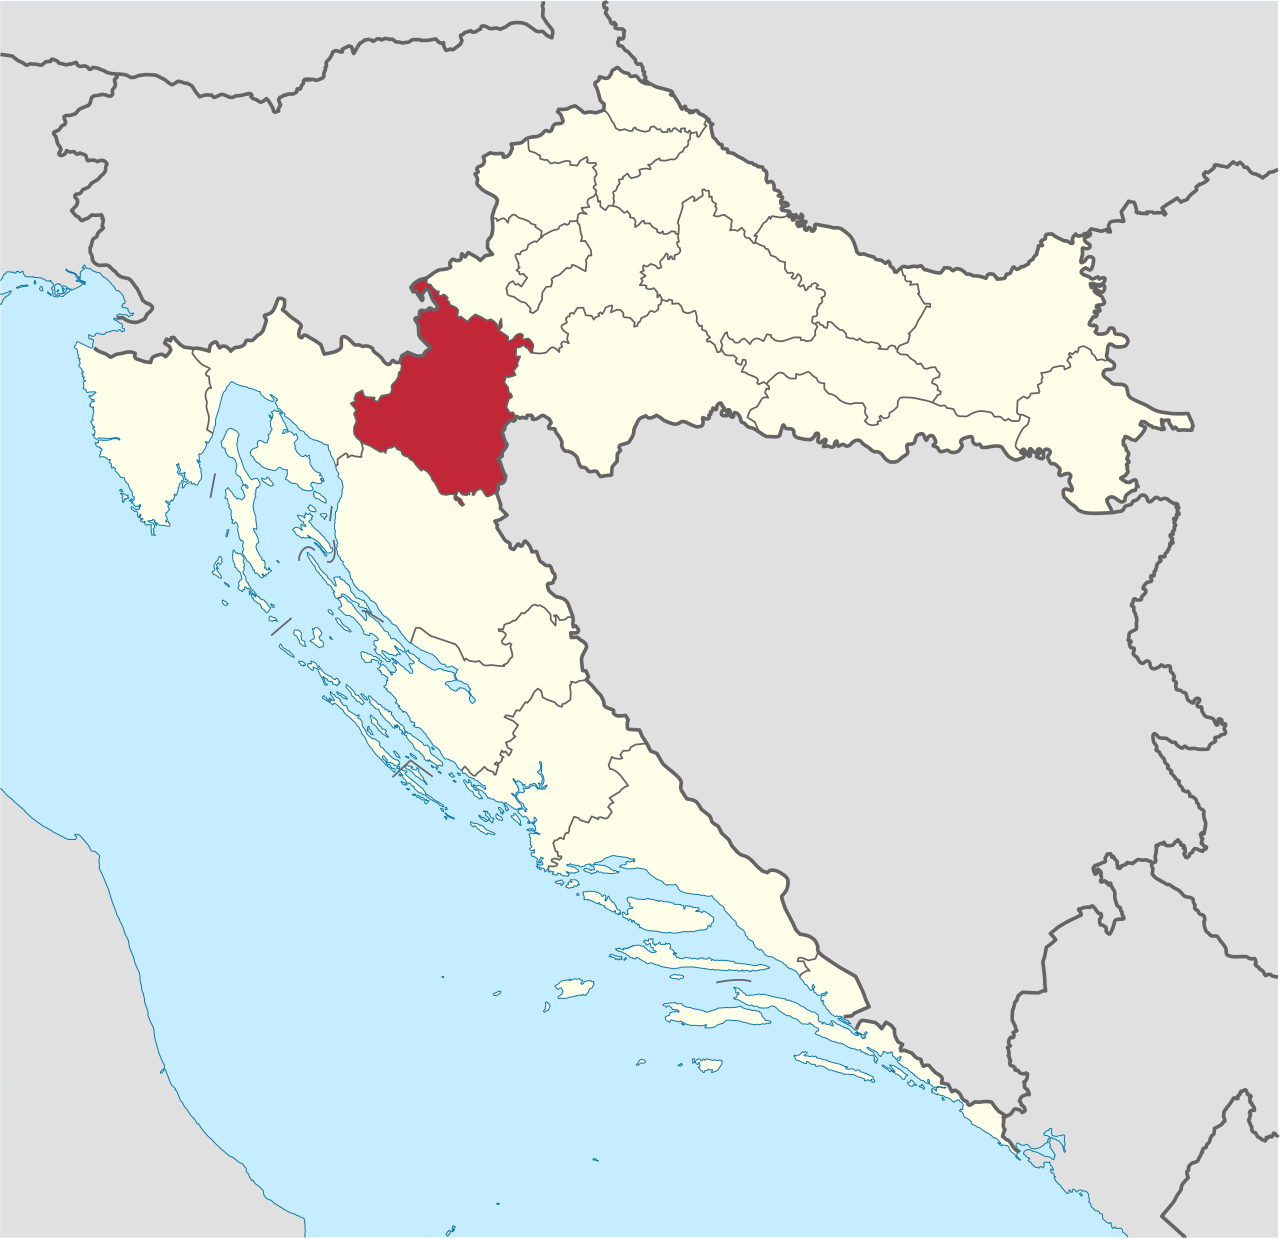 Croatian Castle Urbex location or around the region Karlovačka županija (Općina Bosiljevo), Croatia